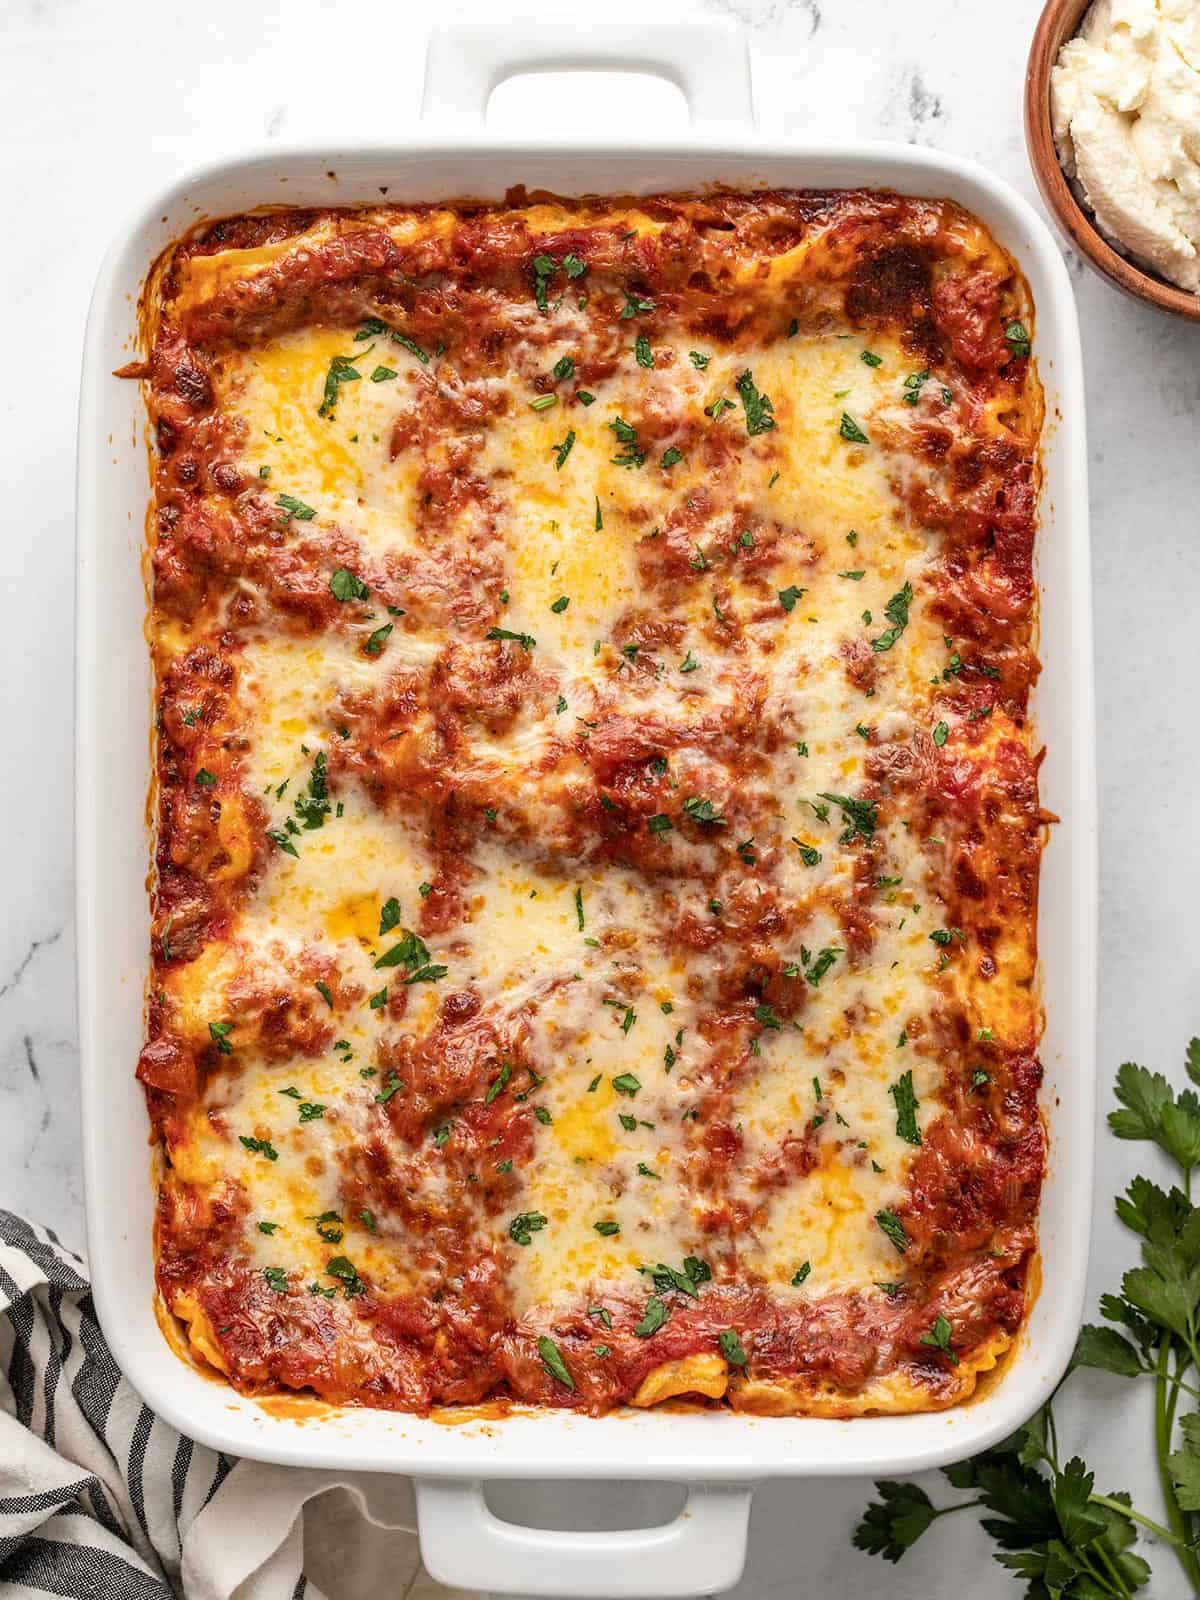 https://www.budgetbytes.com/wp-content/uploads/2022/12/Homemade-Lasagna-V2.jpg